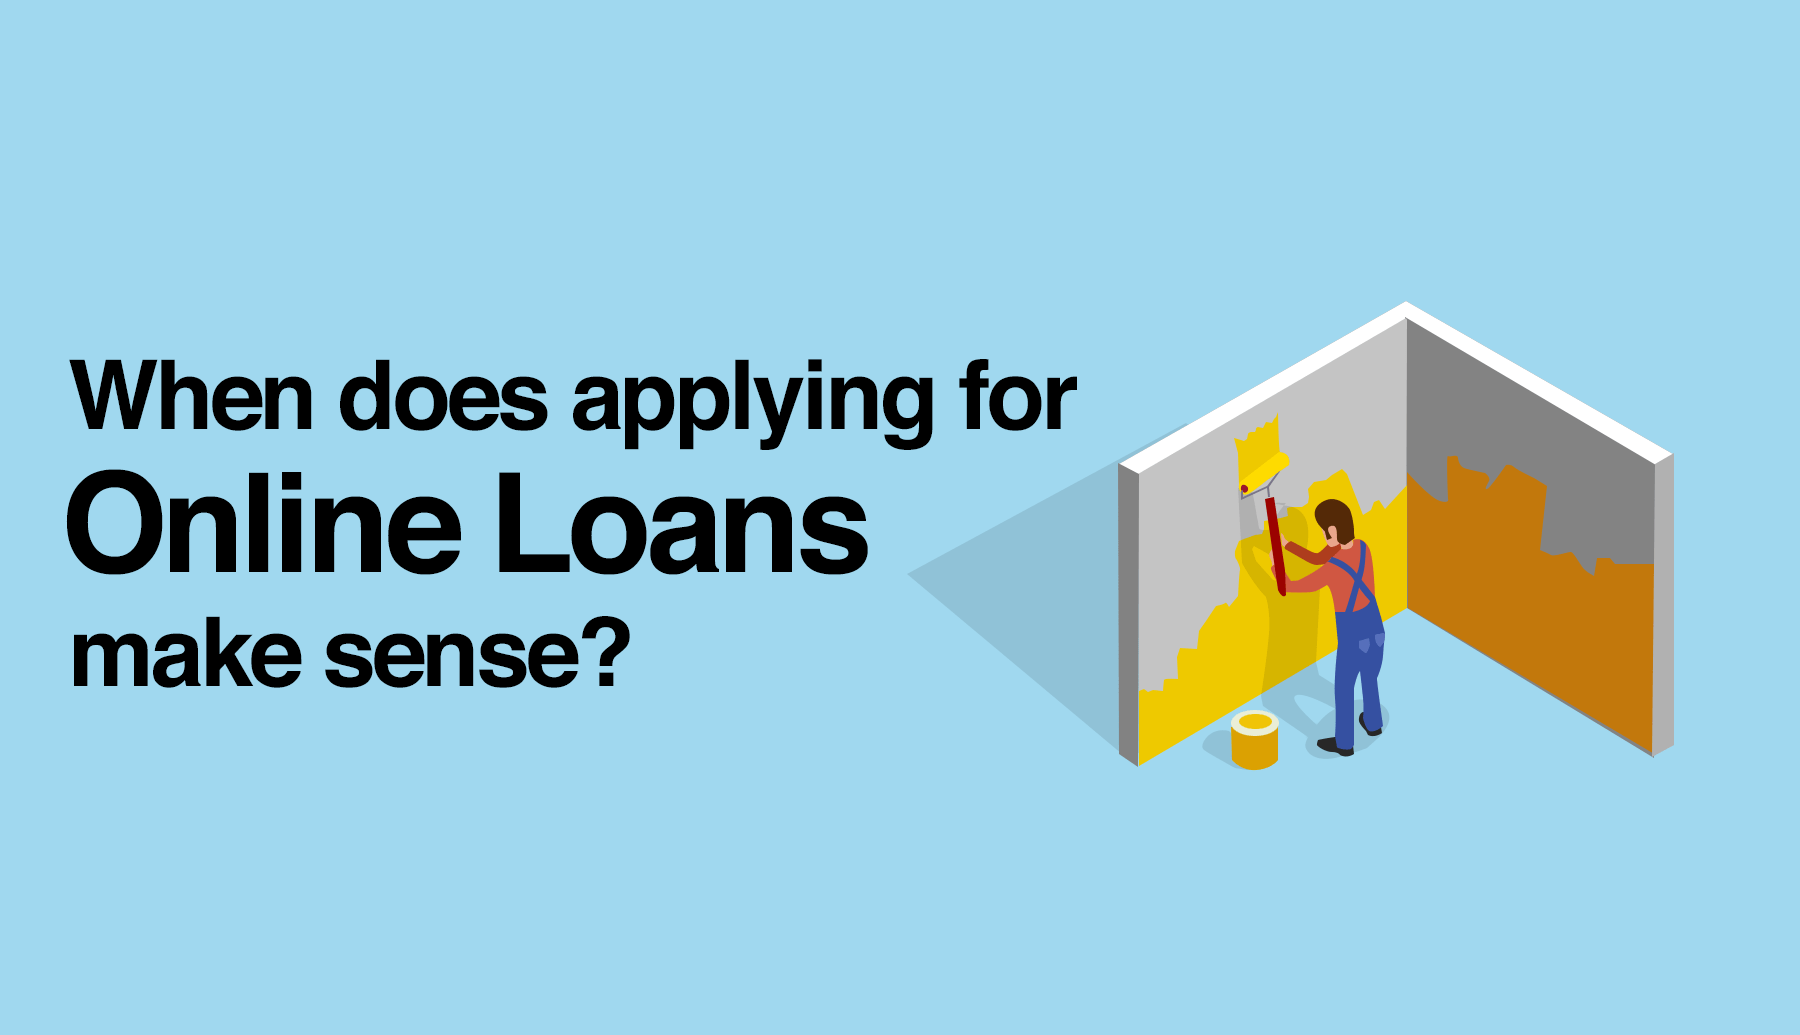 When Does Applying for Online Installment Loans Make Sense?